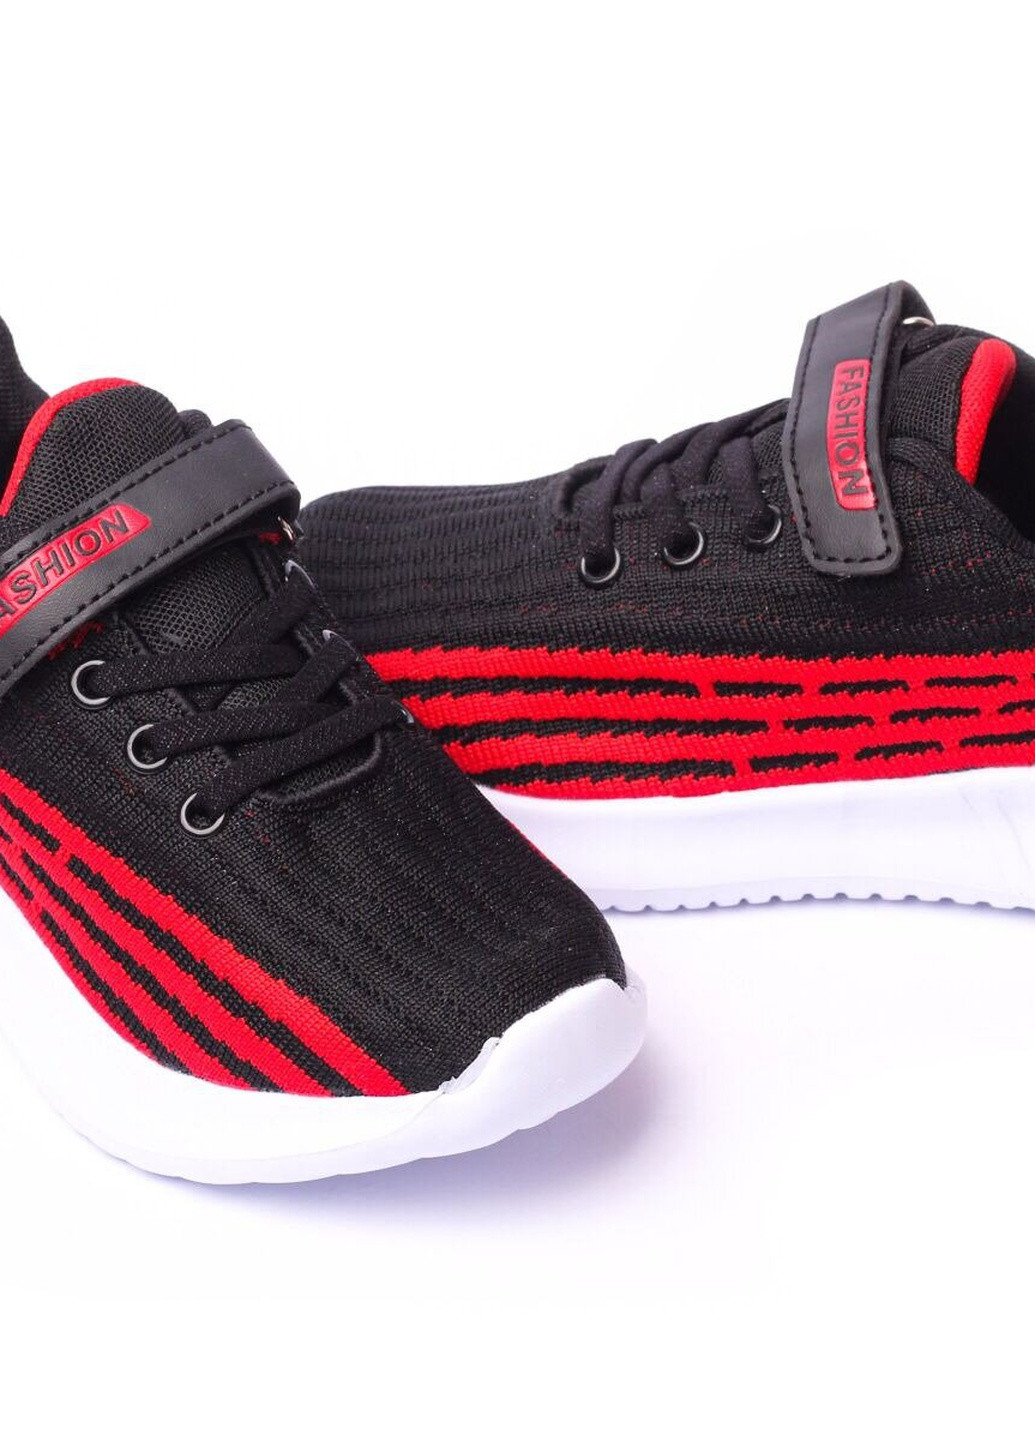 Червоні Осінні кросівки дитячі, для хлопчика, 31 розмір чорно-червоний 2000903169574 Erra